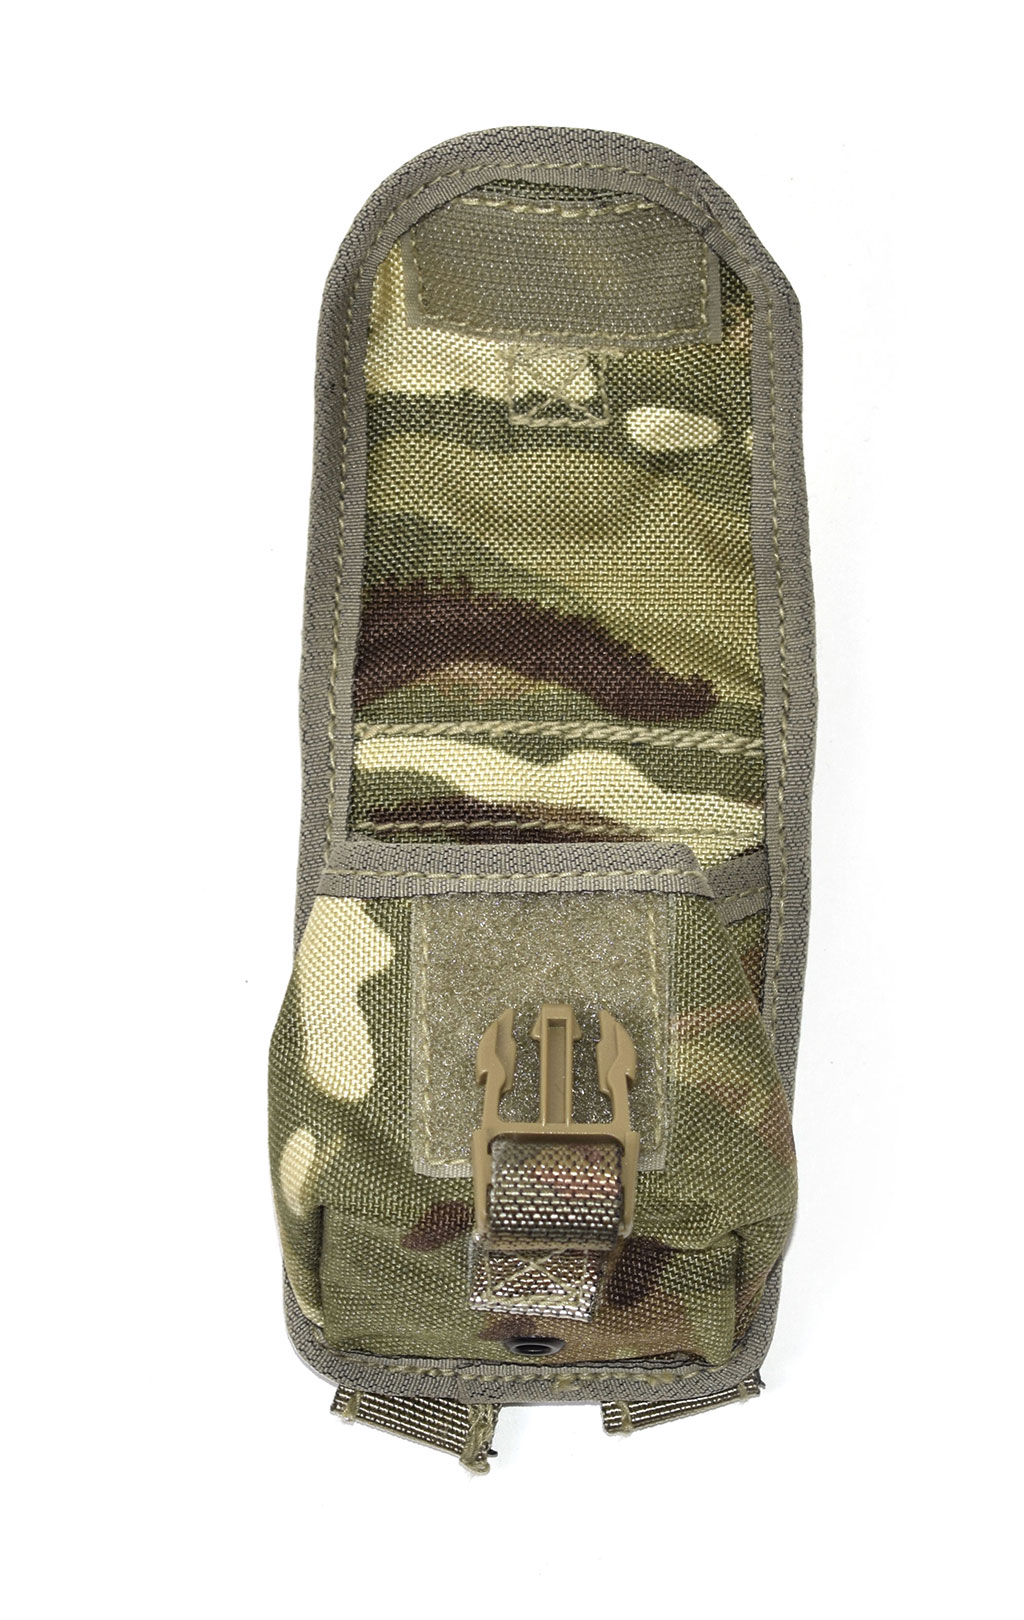 Подсумок гранатный AP Grenade Osprey MK IV mtp Англия